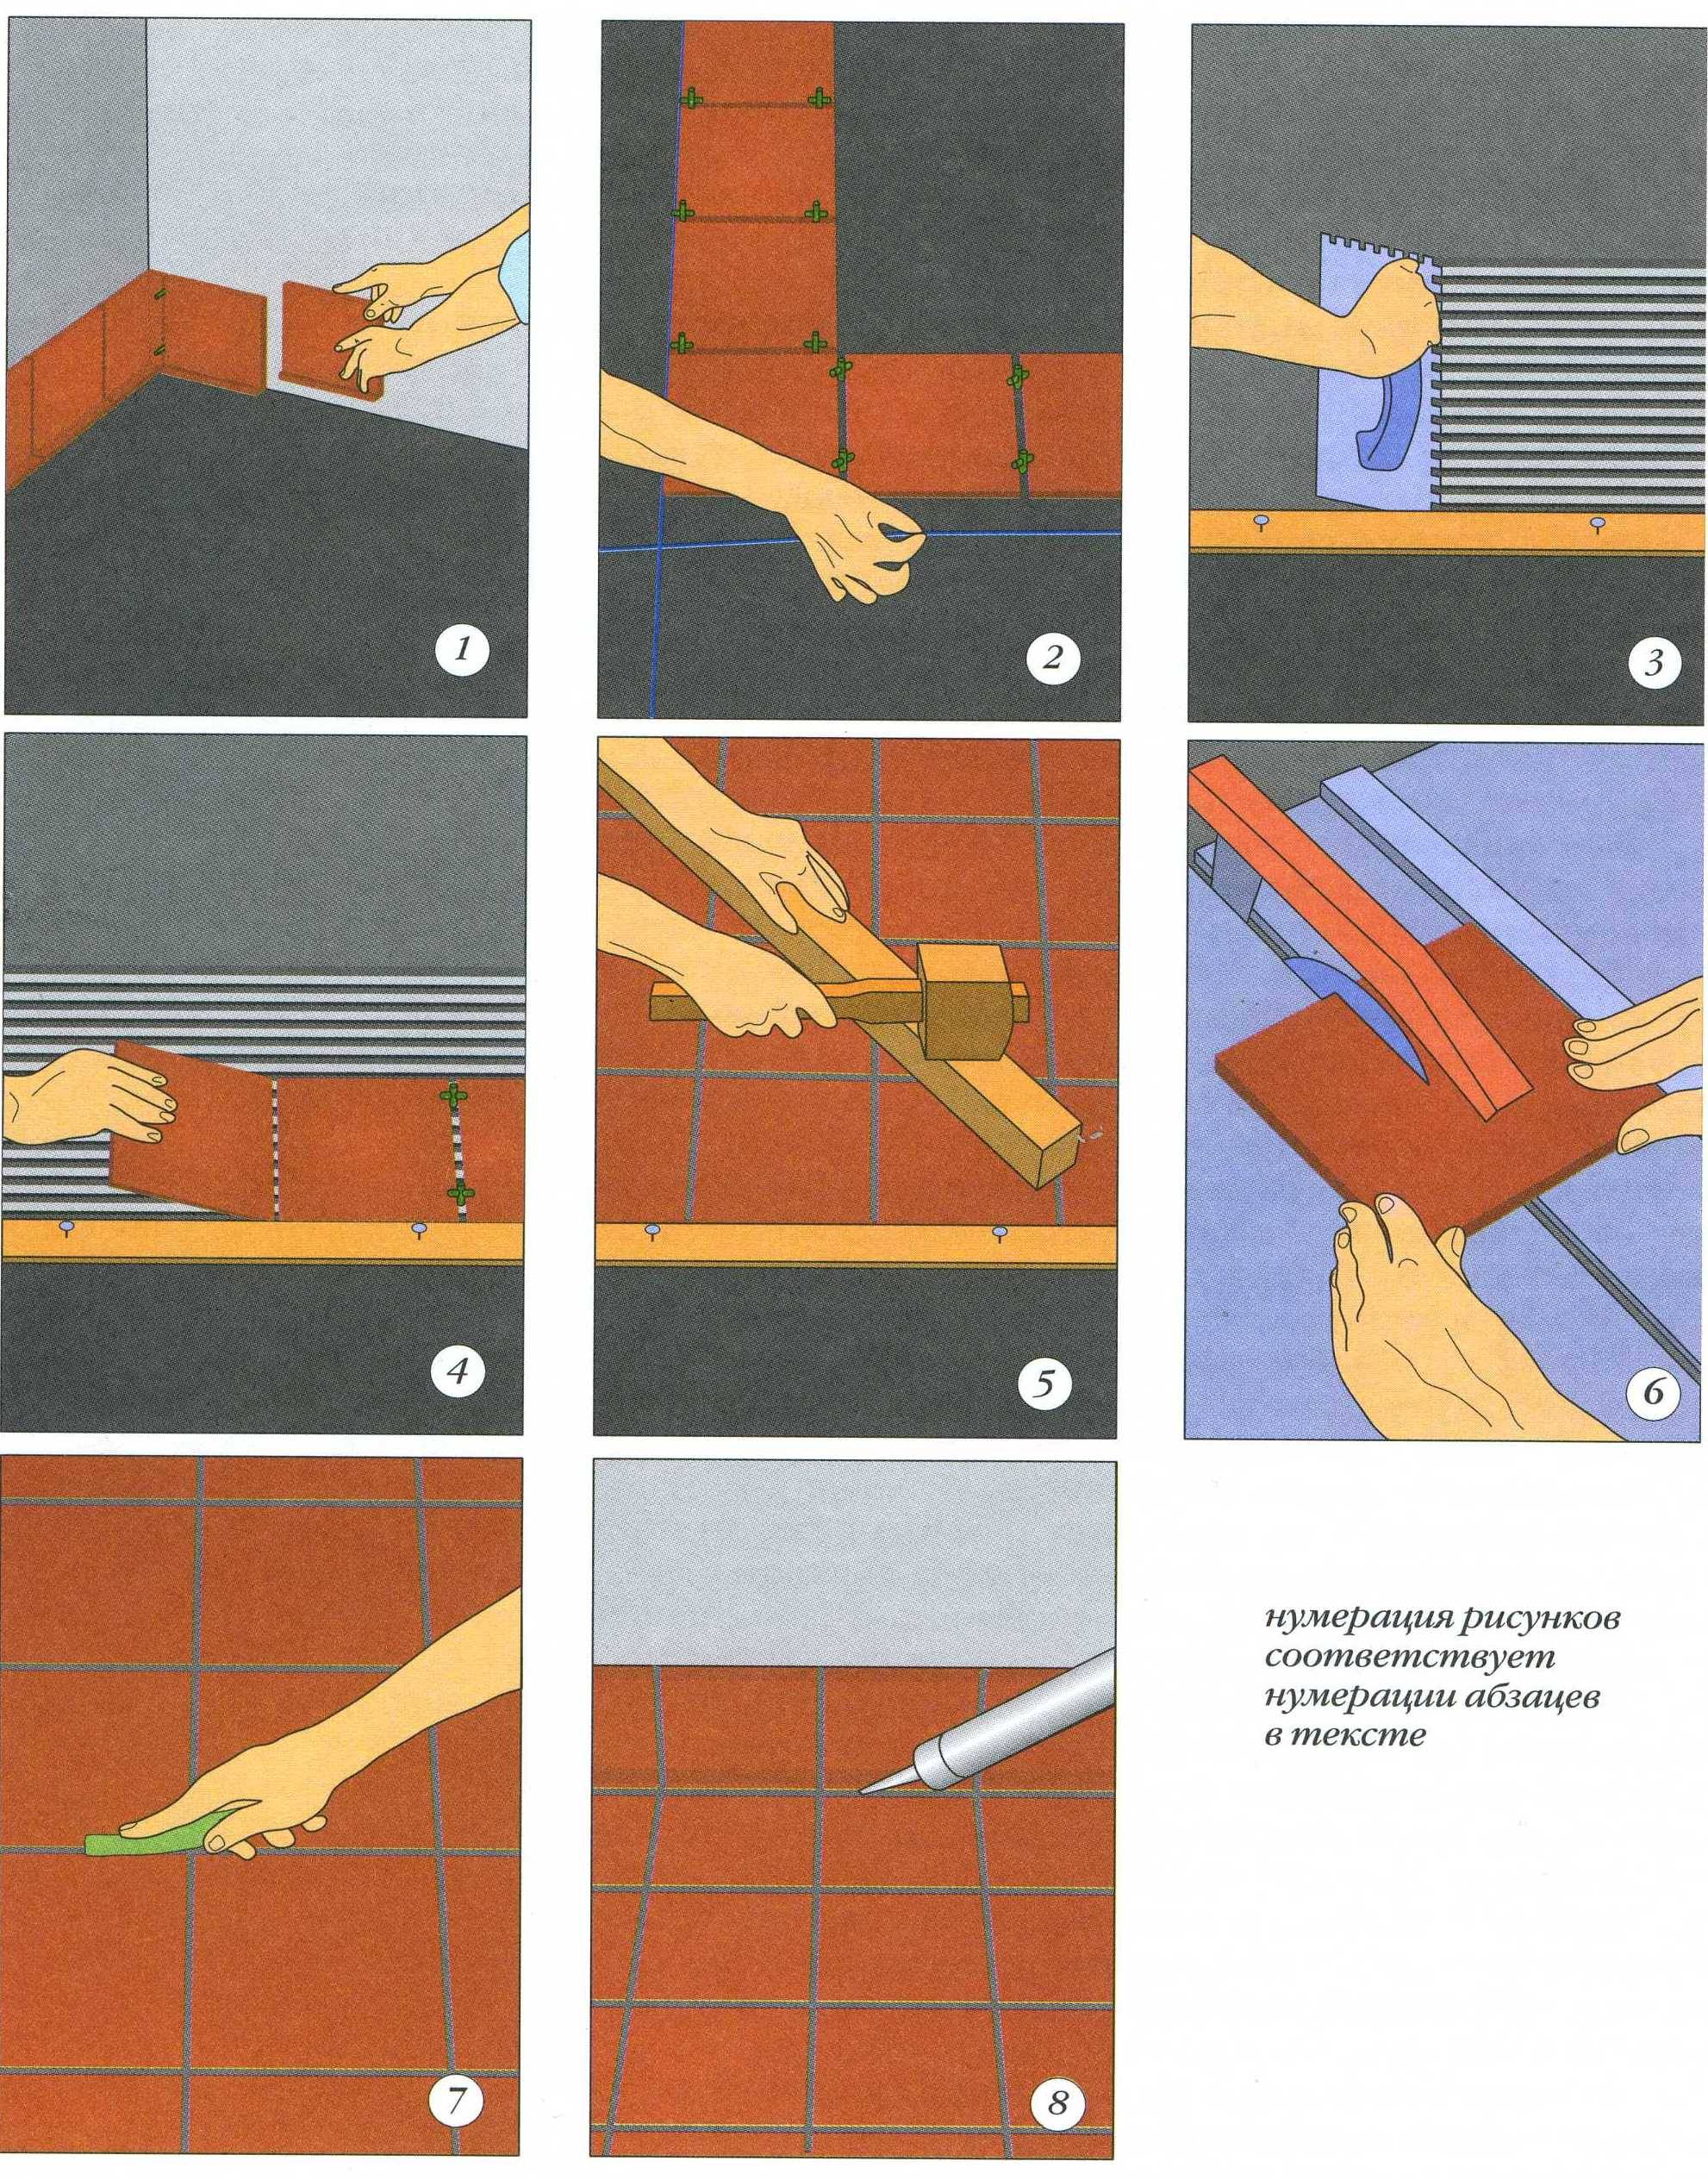 Практические советы по укладке плитки на пол своими руками